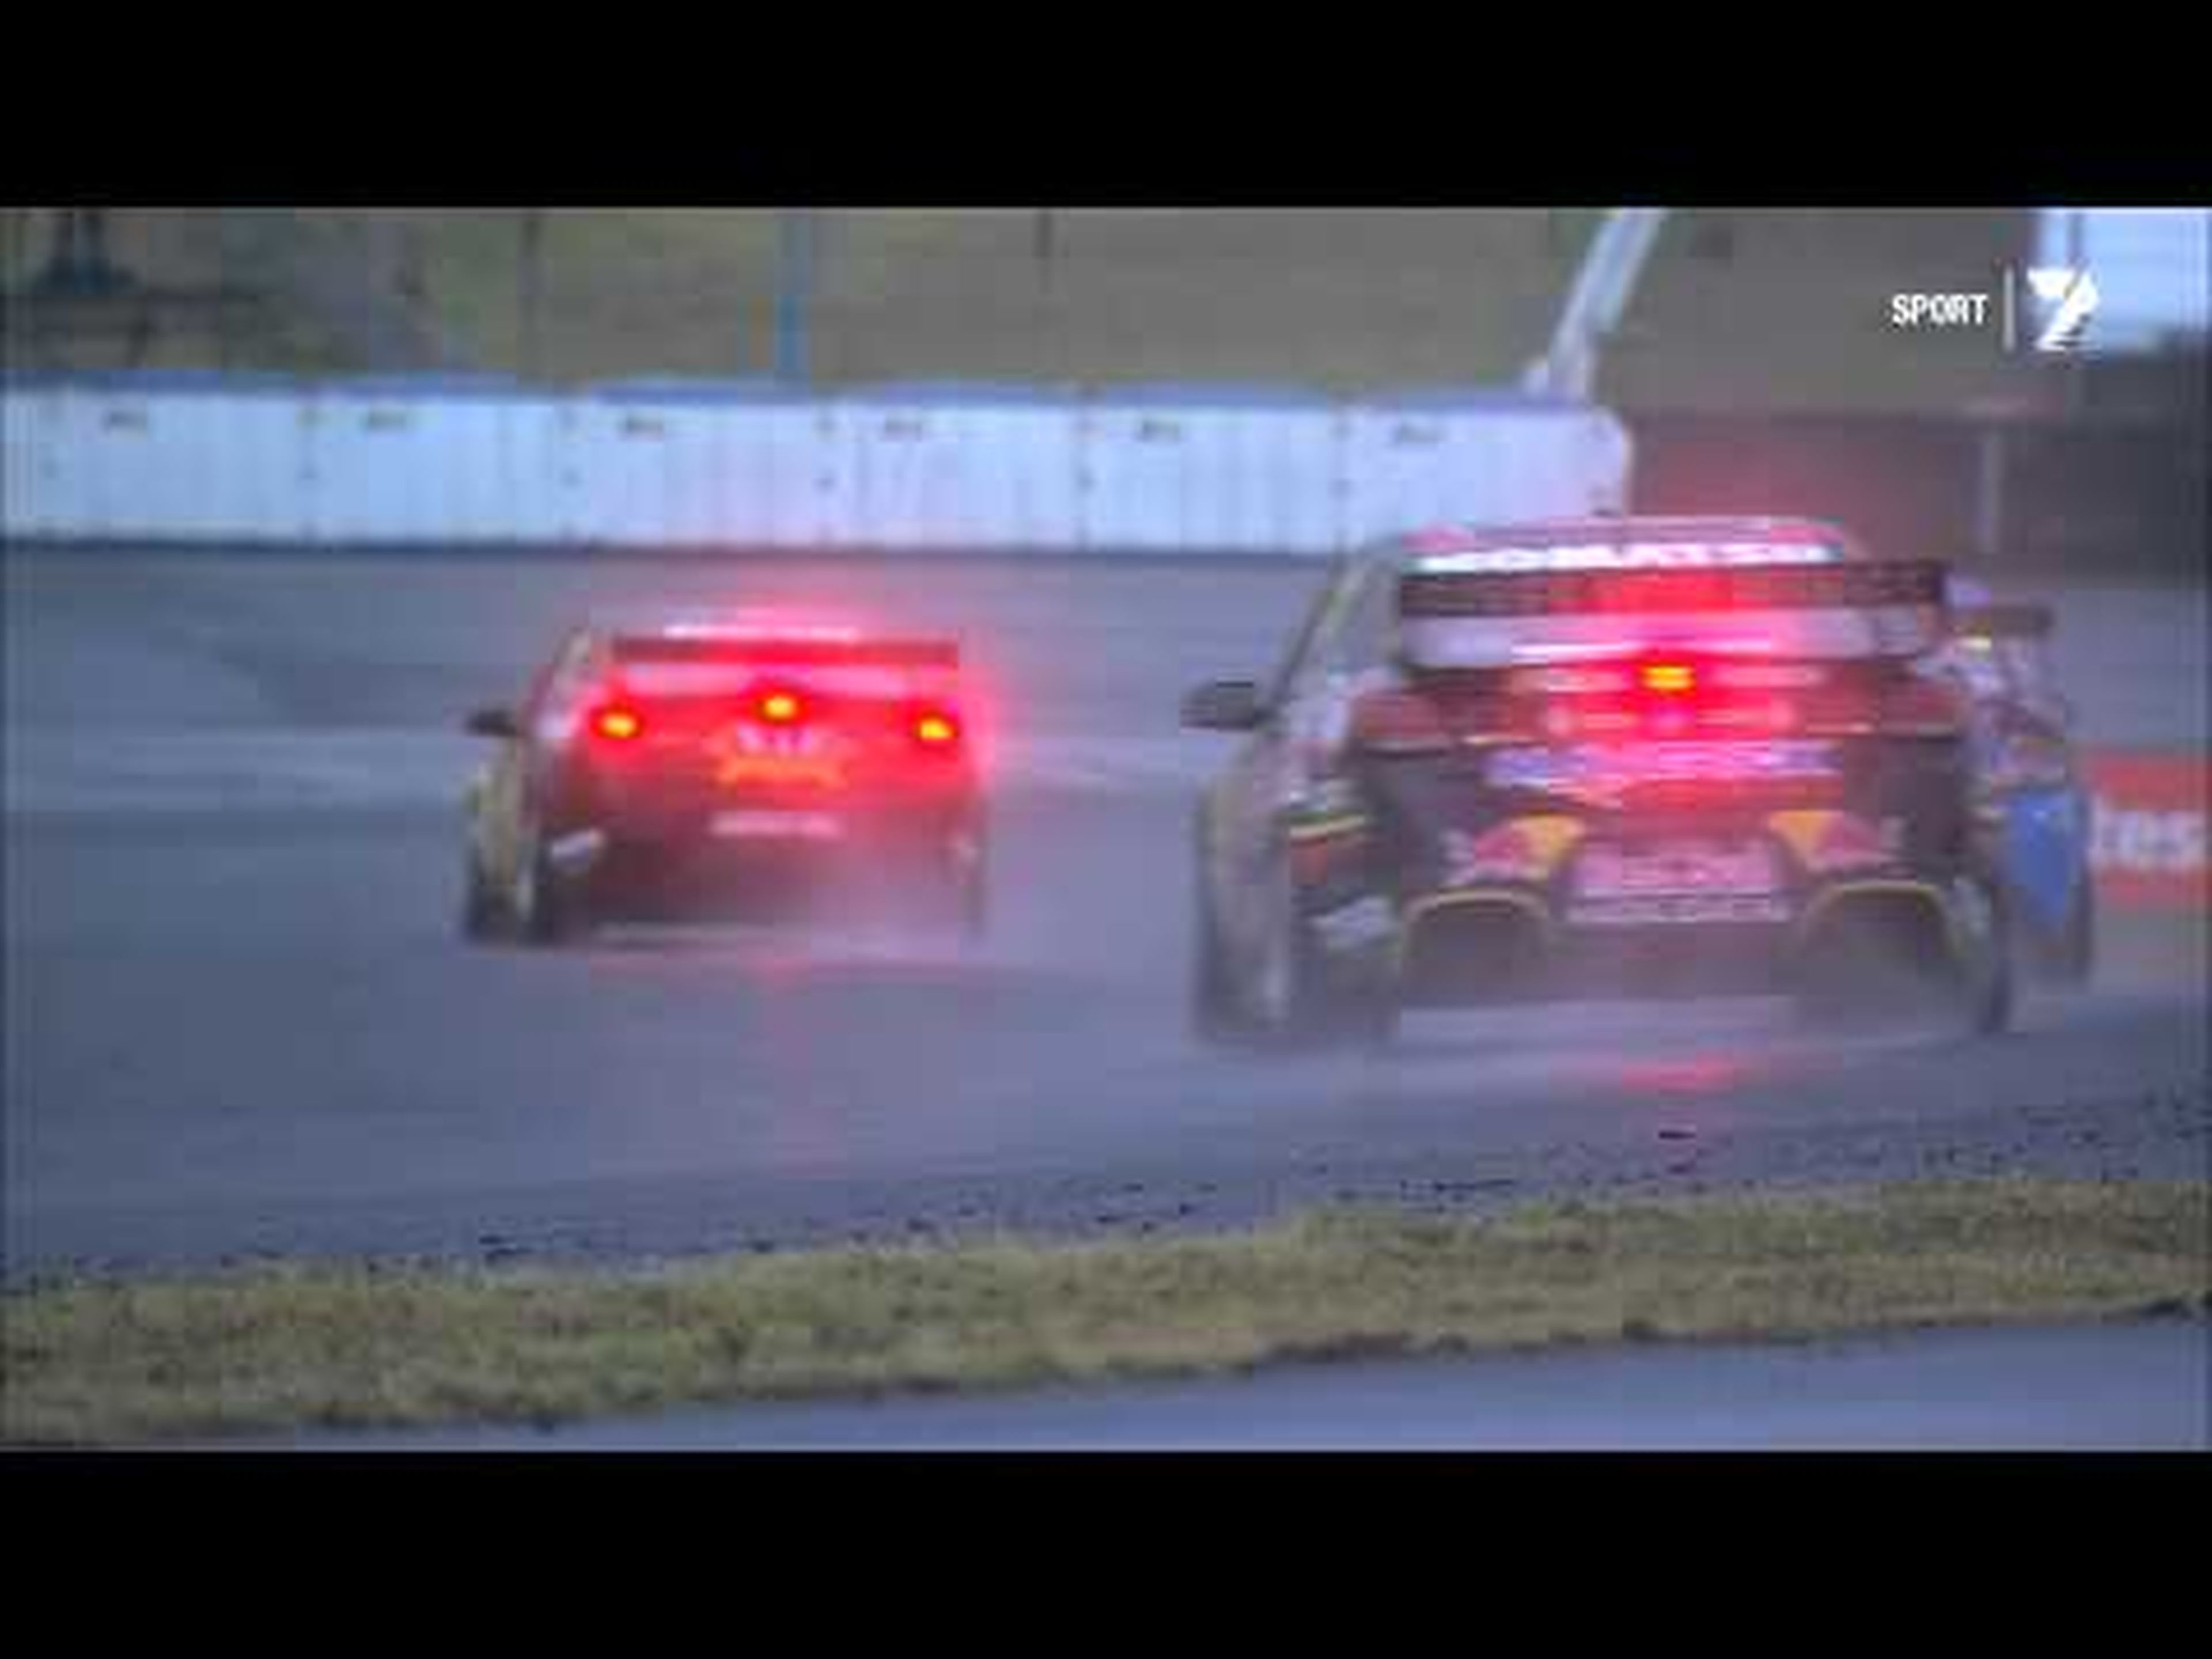 Vídeo de los V8 Supercars haciendo Drift